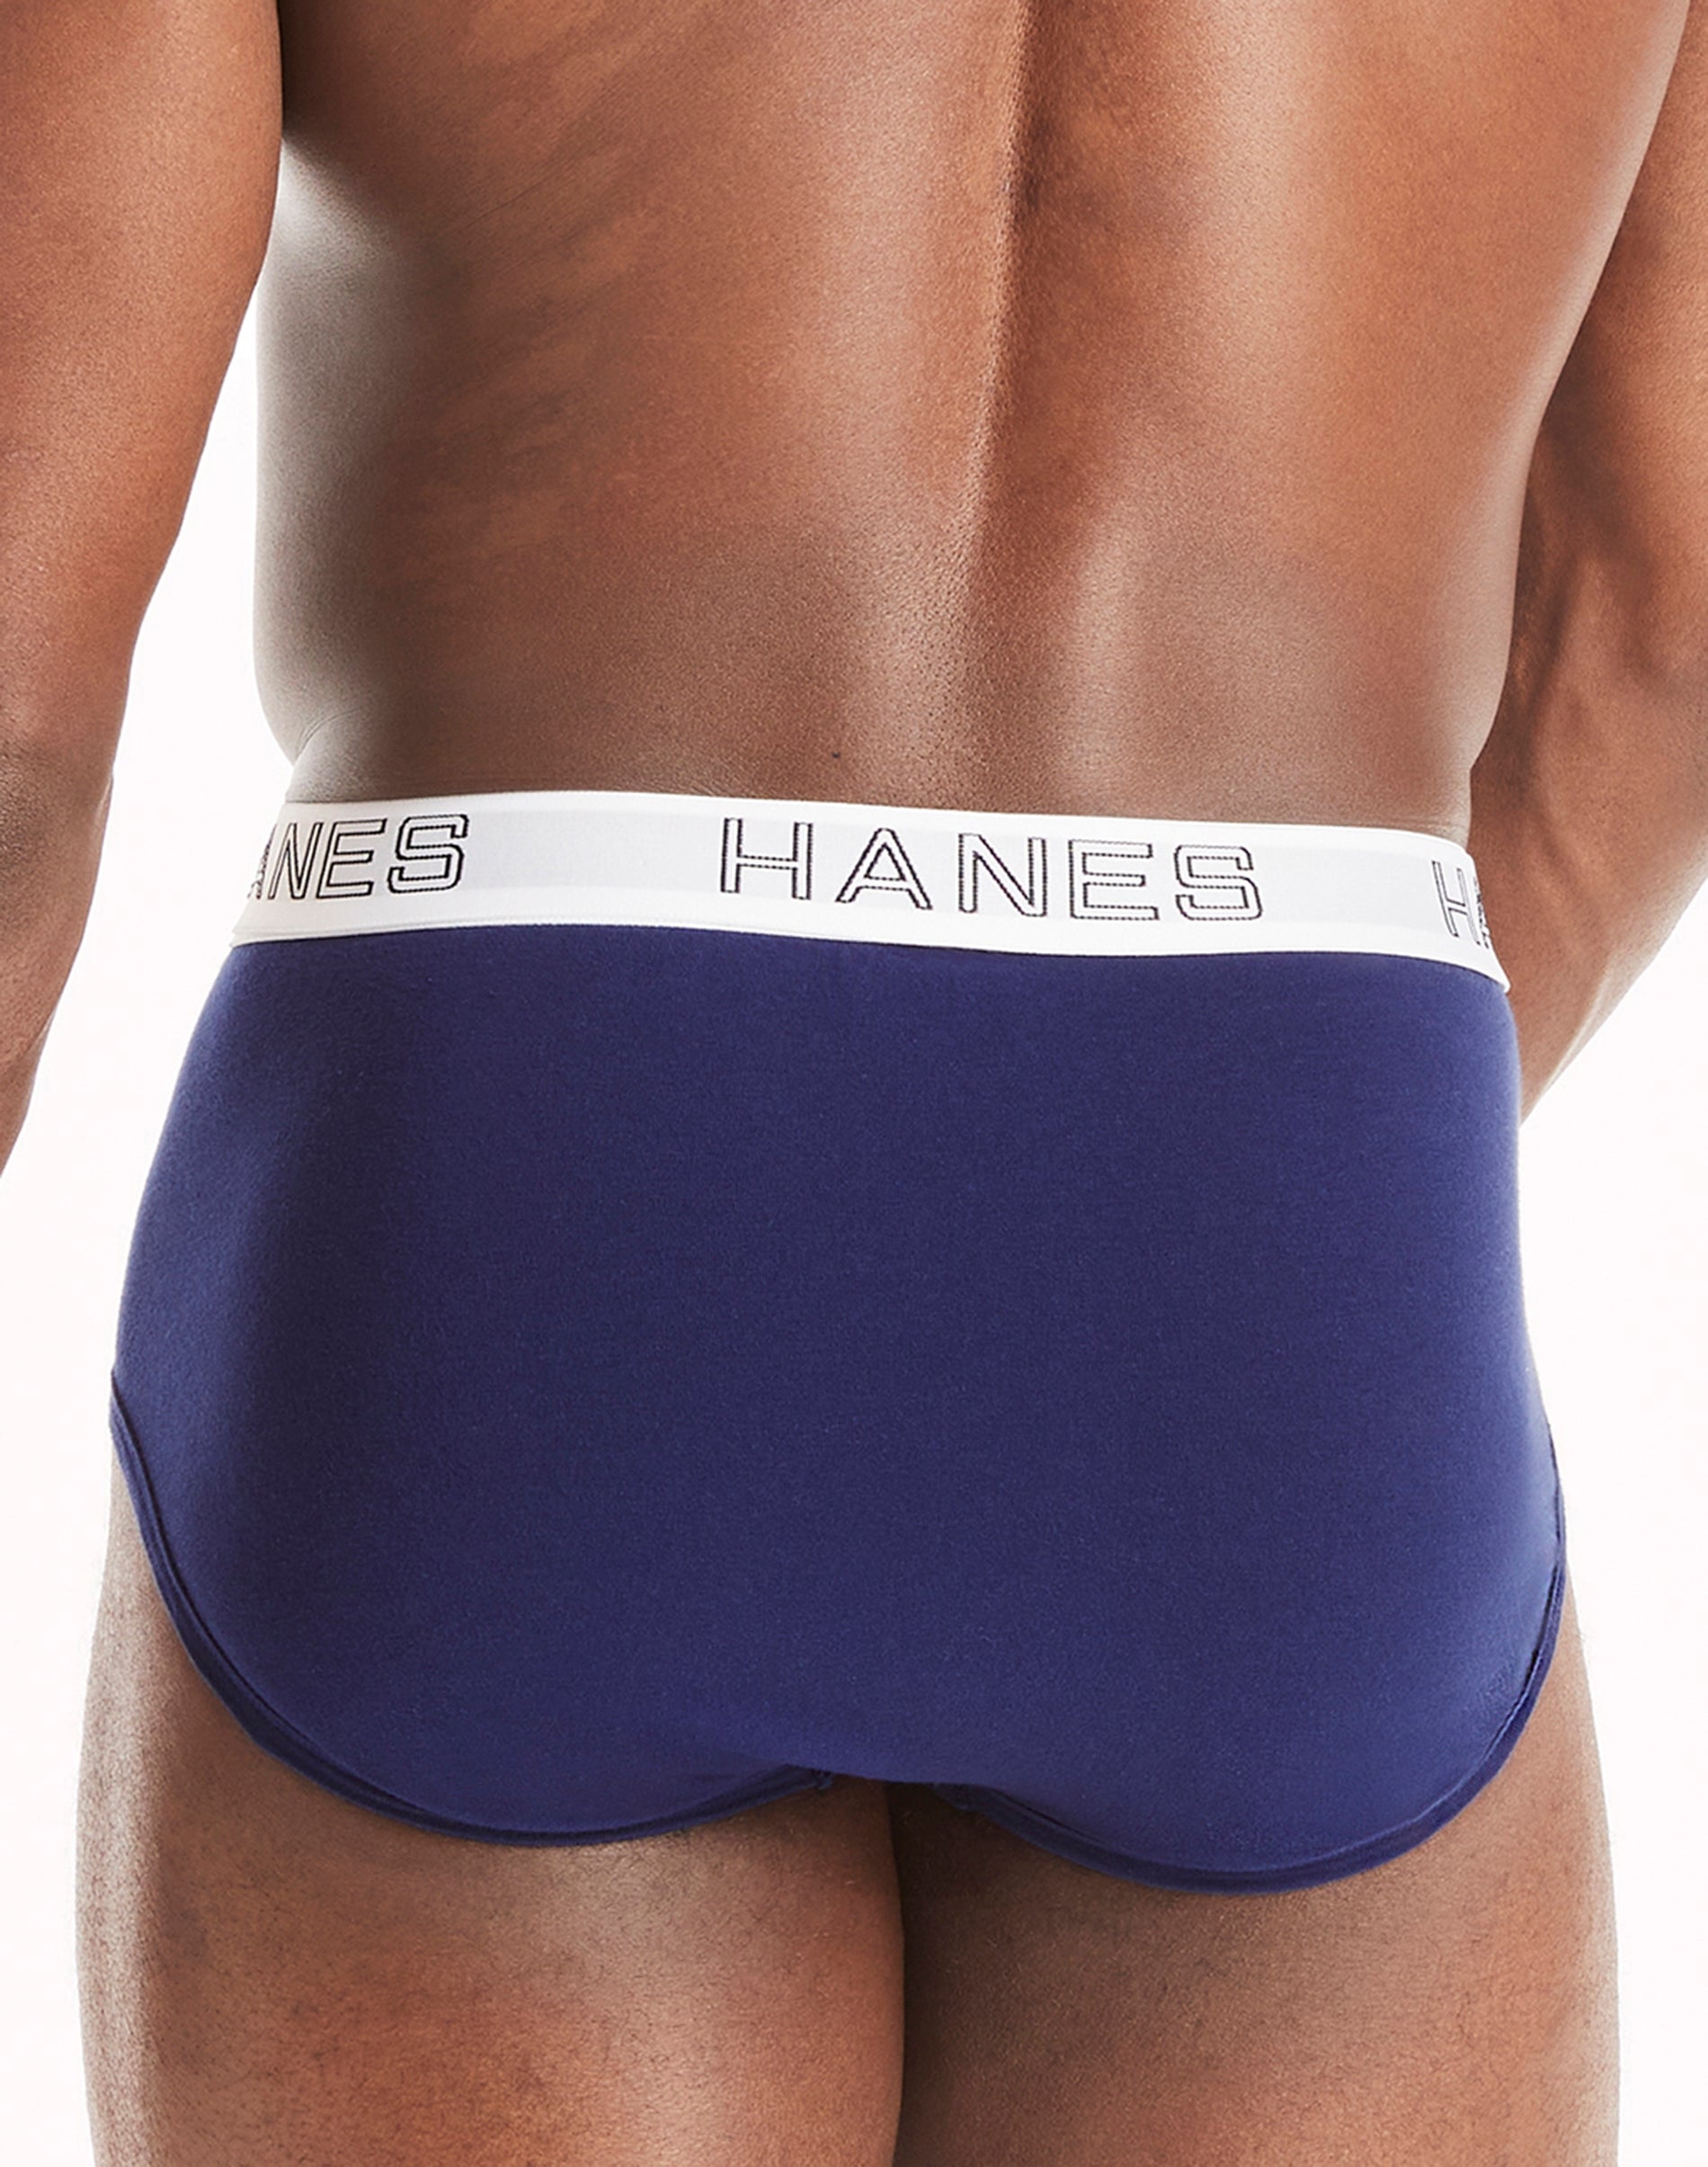 Hanes Ultimate Men's Stretch Cotton Brief Underwear, Moisture